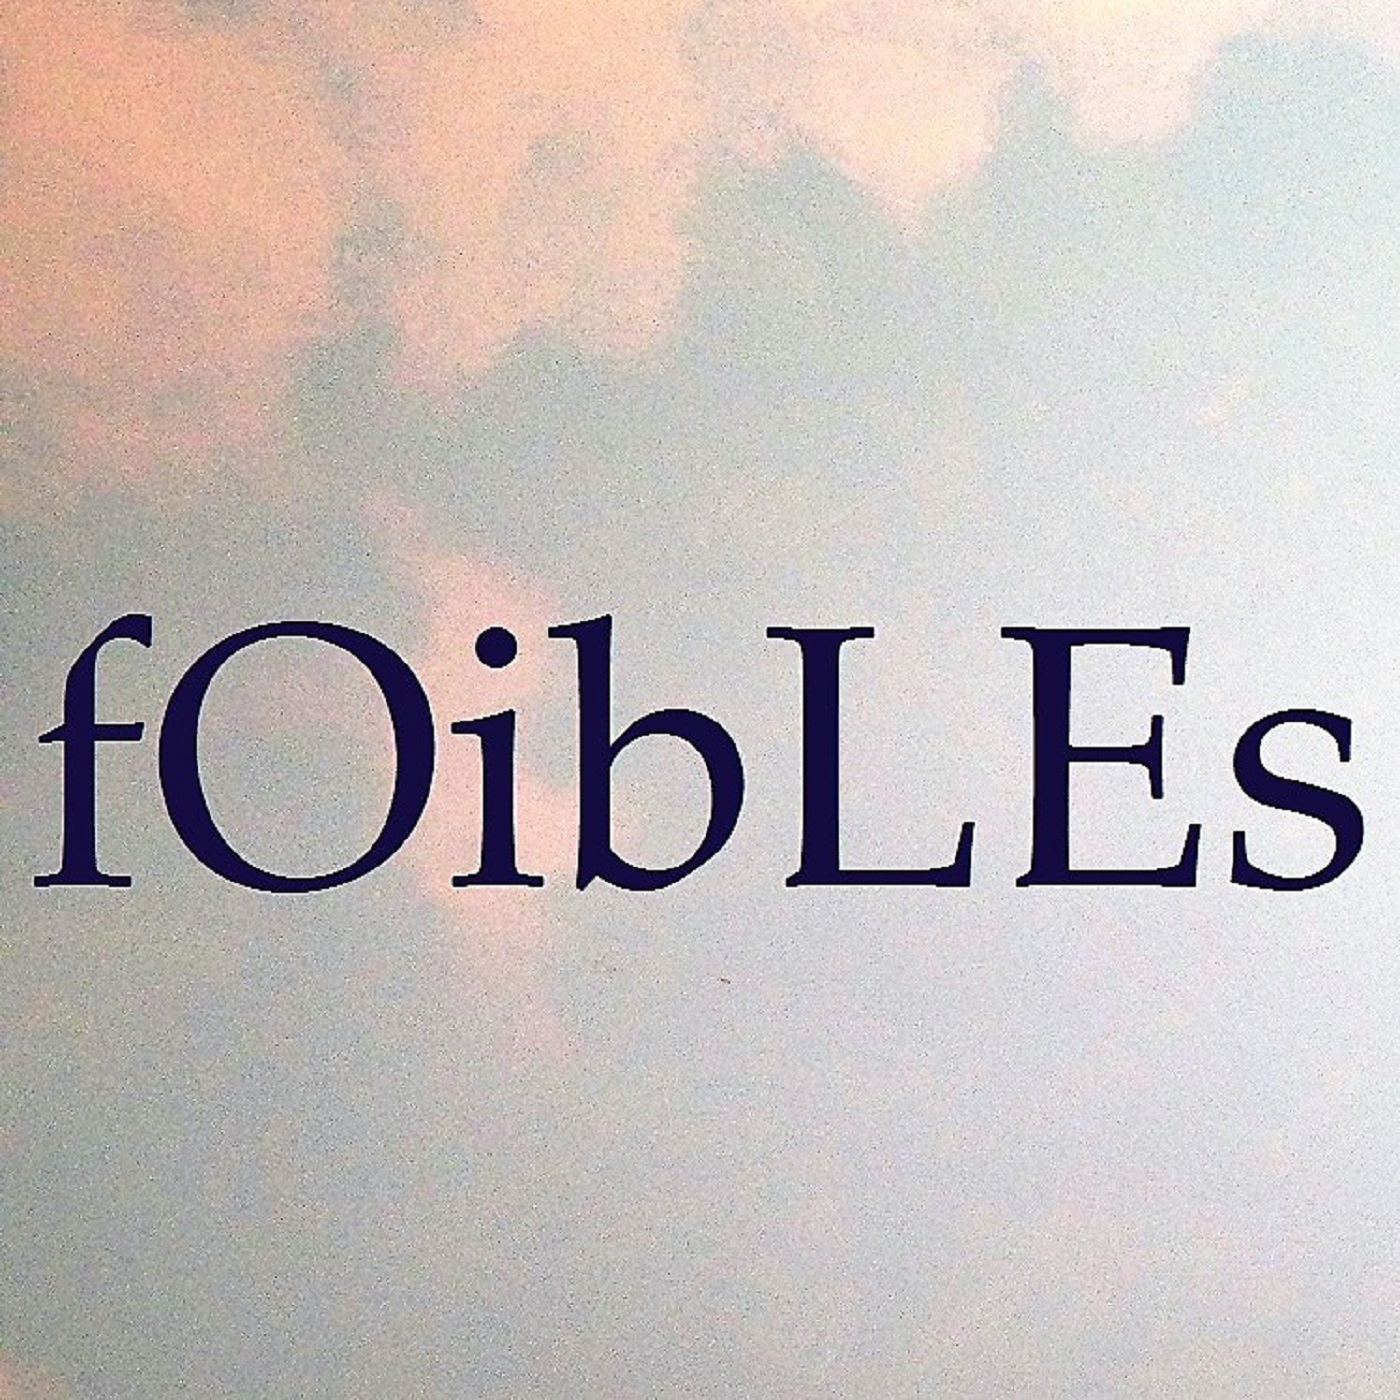 Foibles- Episode 1 Perry Mason